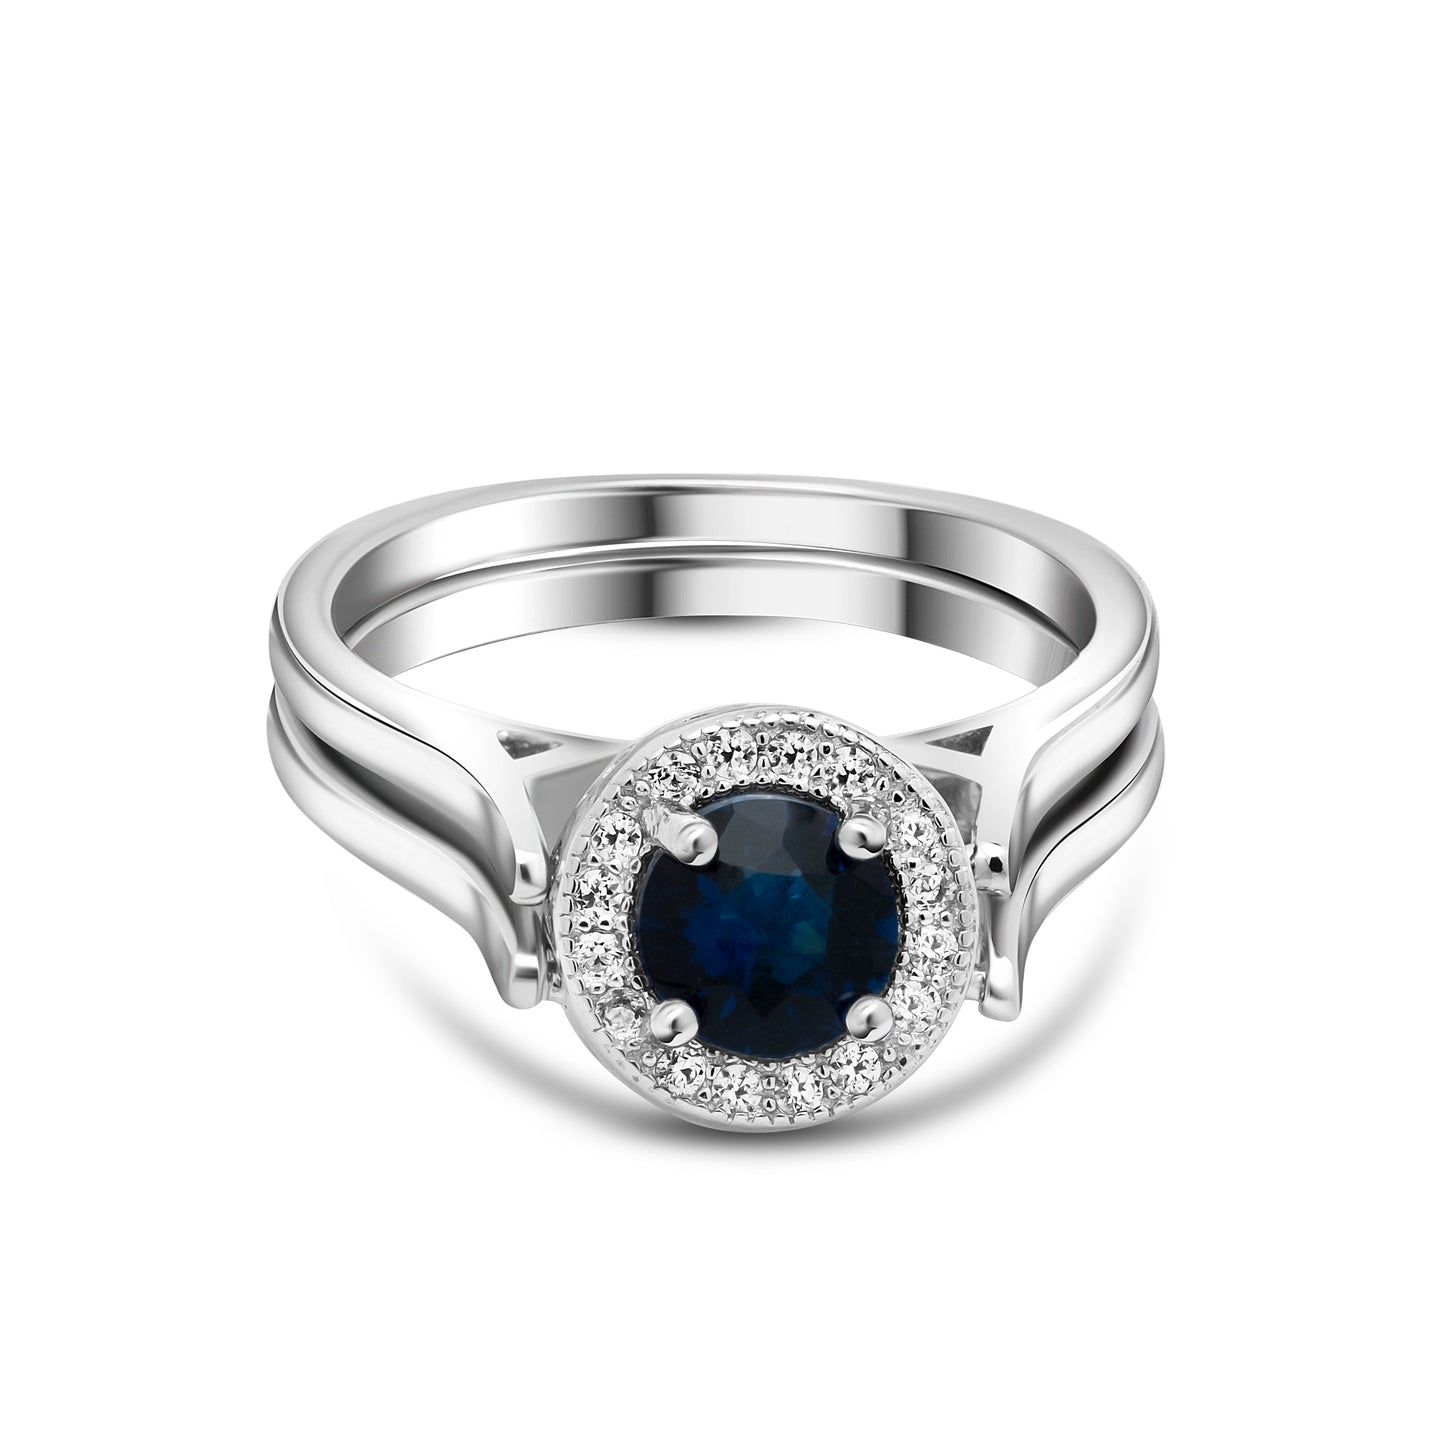 Silver Unique Central Blue Stone Ring